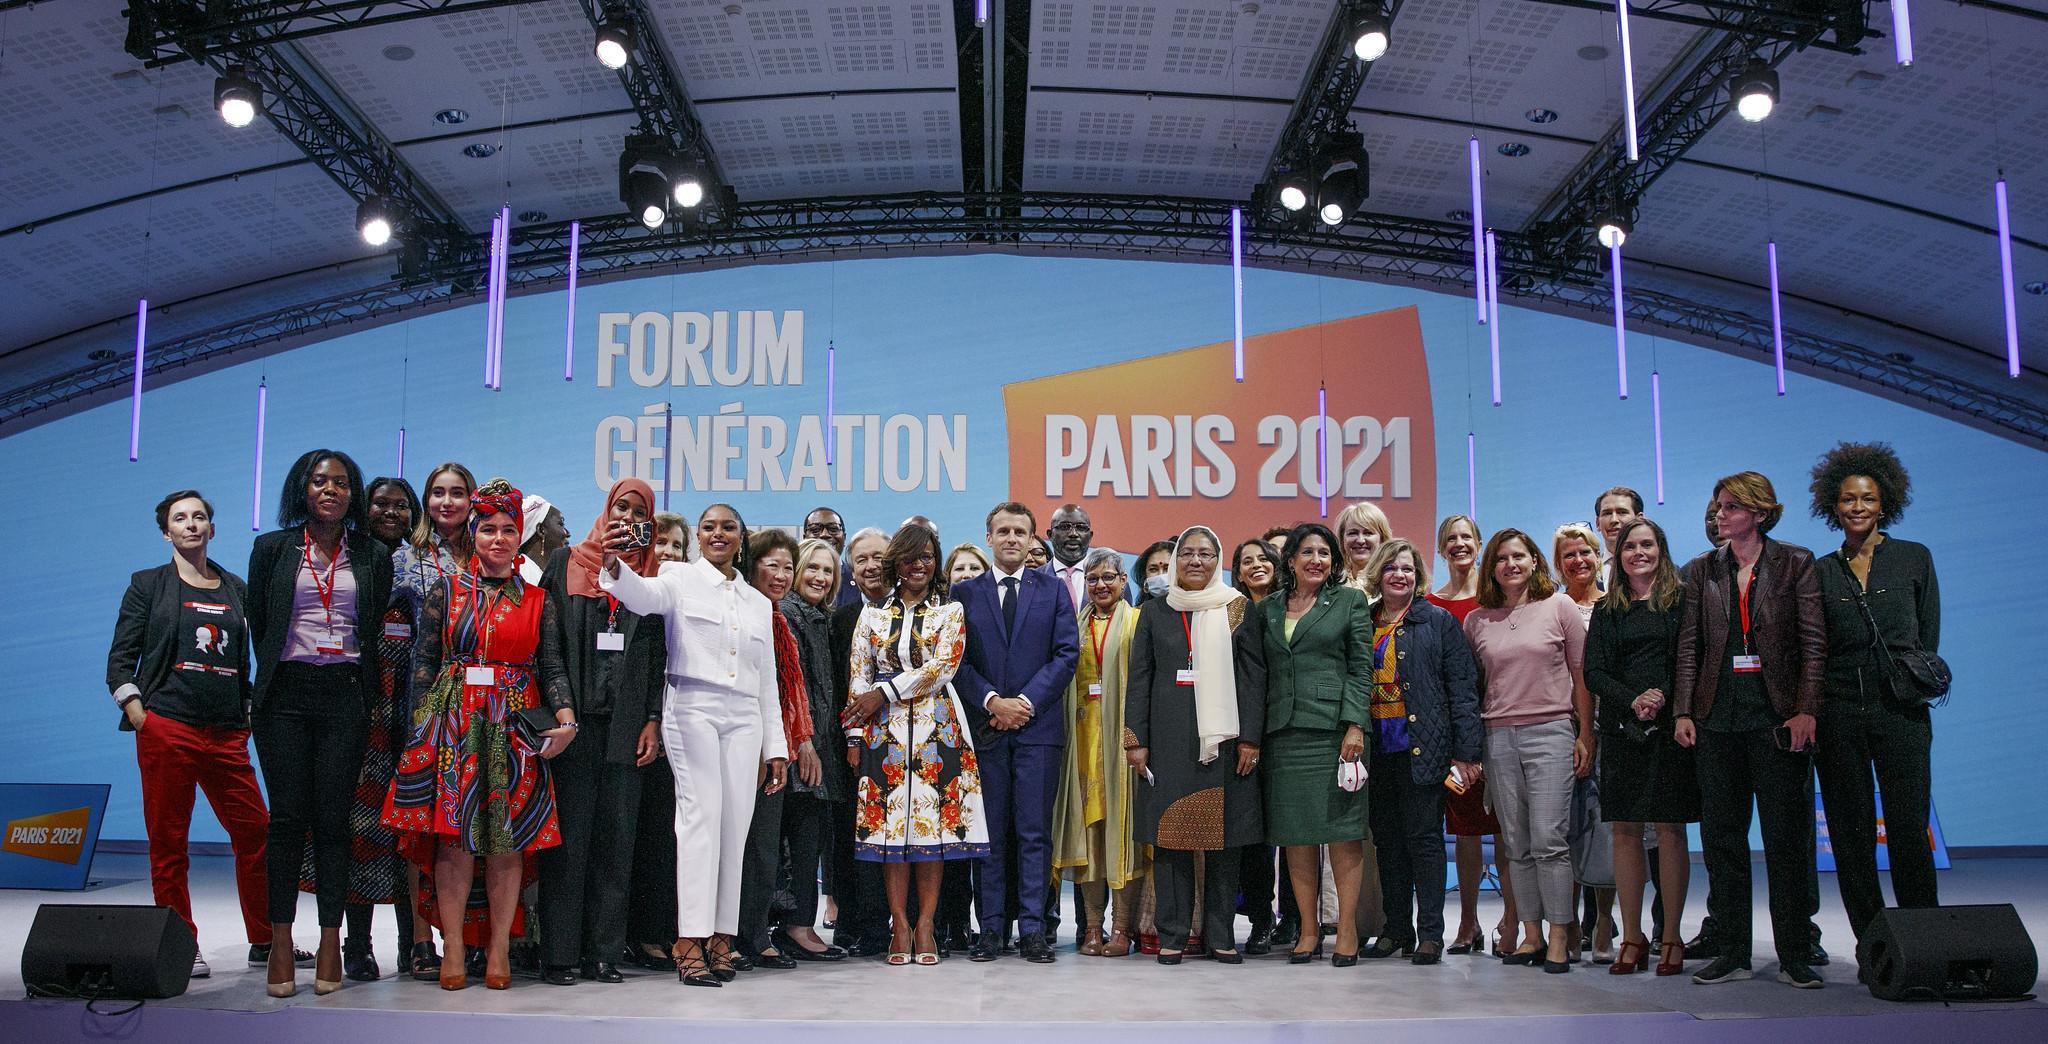 Suuri joukko päättäjiä, aktivisteja ja yrittäjiä seisoo yhdessä lavalla. Taustalla näkyy Pariisin tasa-arvofoorumi -teksti.